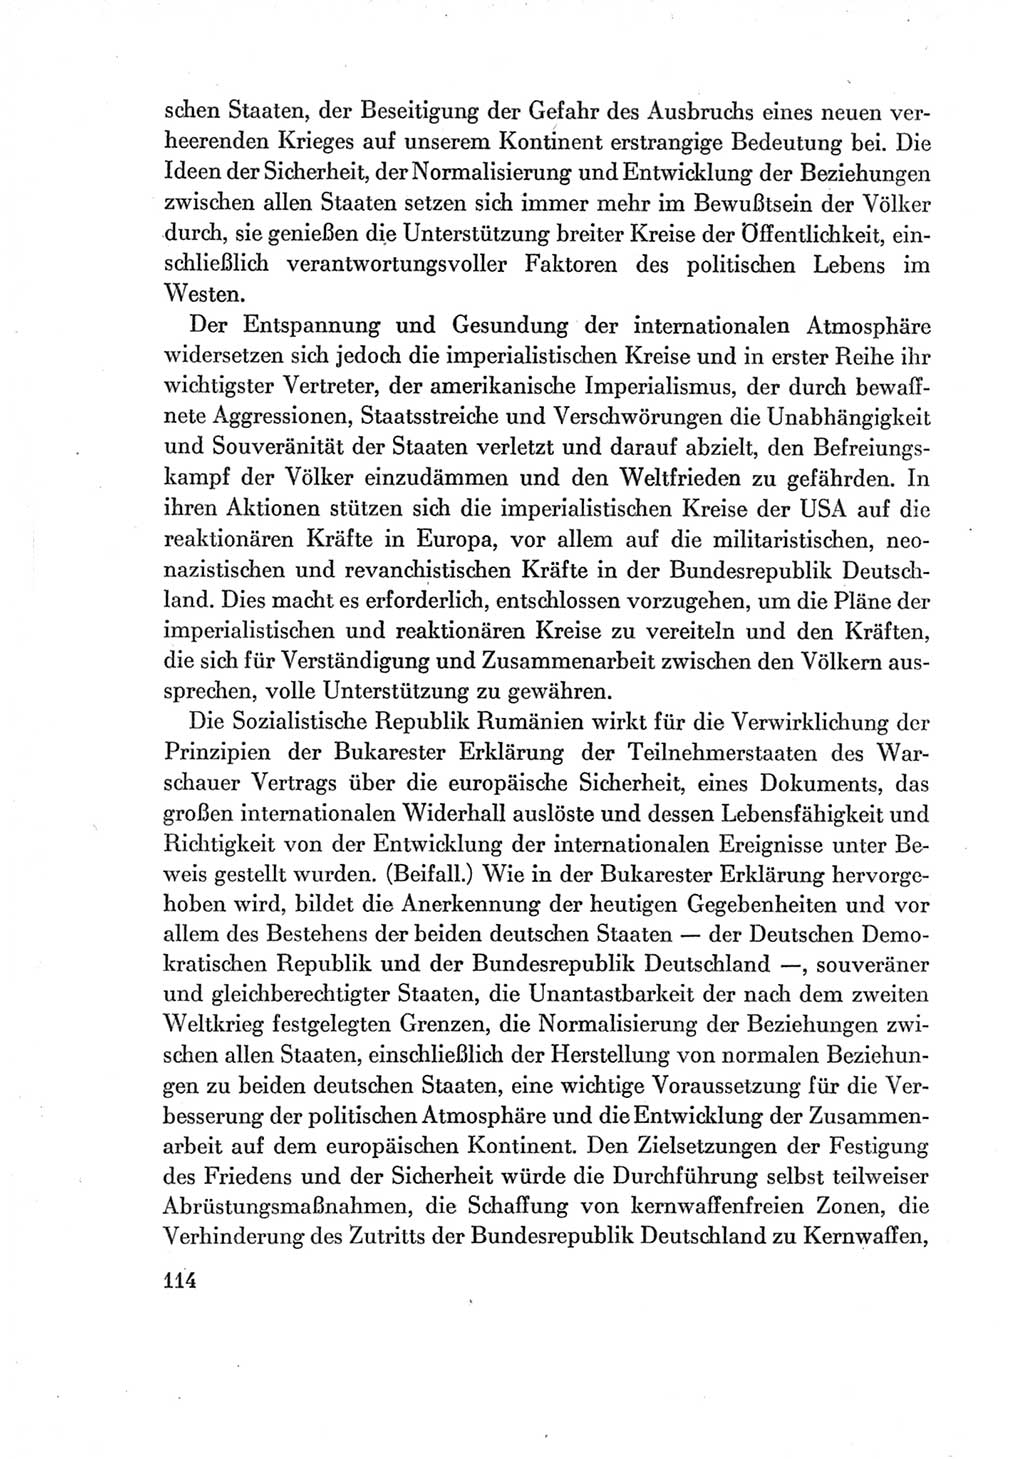 Protokoll der Verhandlungen des Ⅶ. Parteitages der Sozialistischen Einheitspartei Deutschlands (SED) [Deutsche Demokratische Republik (DDR)] 1967, Band Ⅱ, Seite 114 (Prot. Verh. Ⅶ. PT SED DDR 1967, Bd. Ⅱ, S. 114)